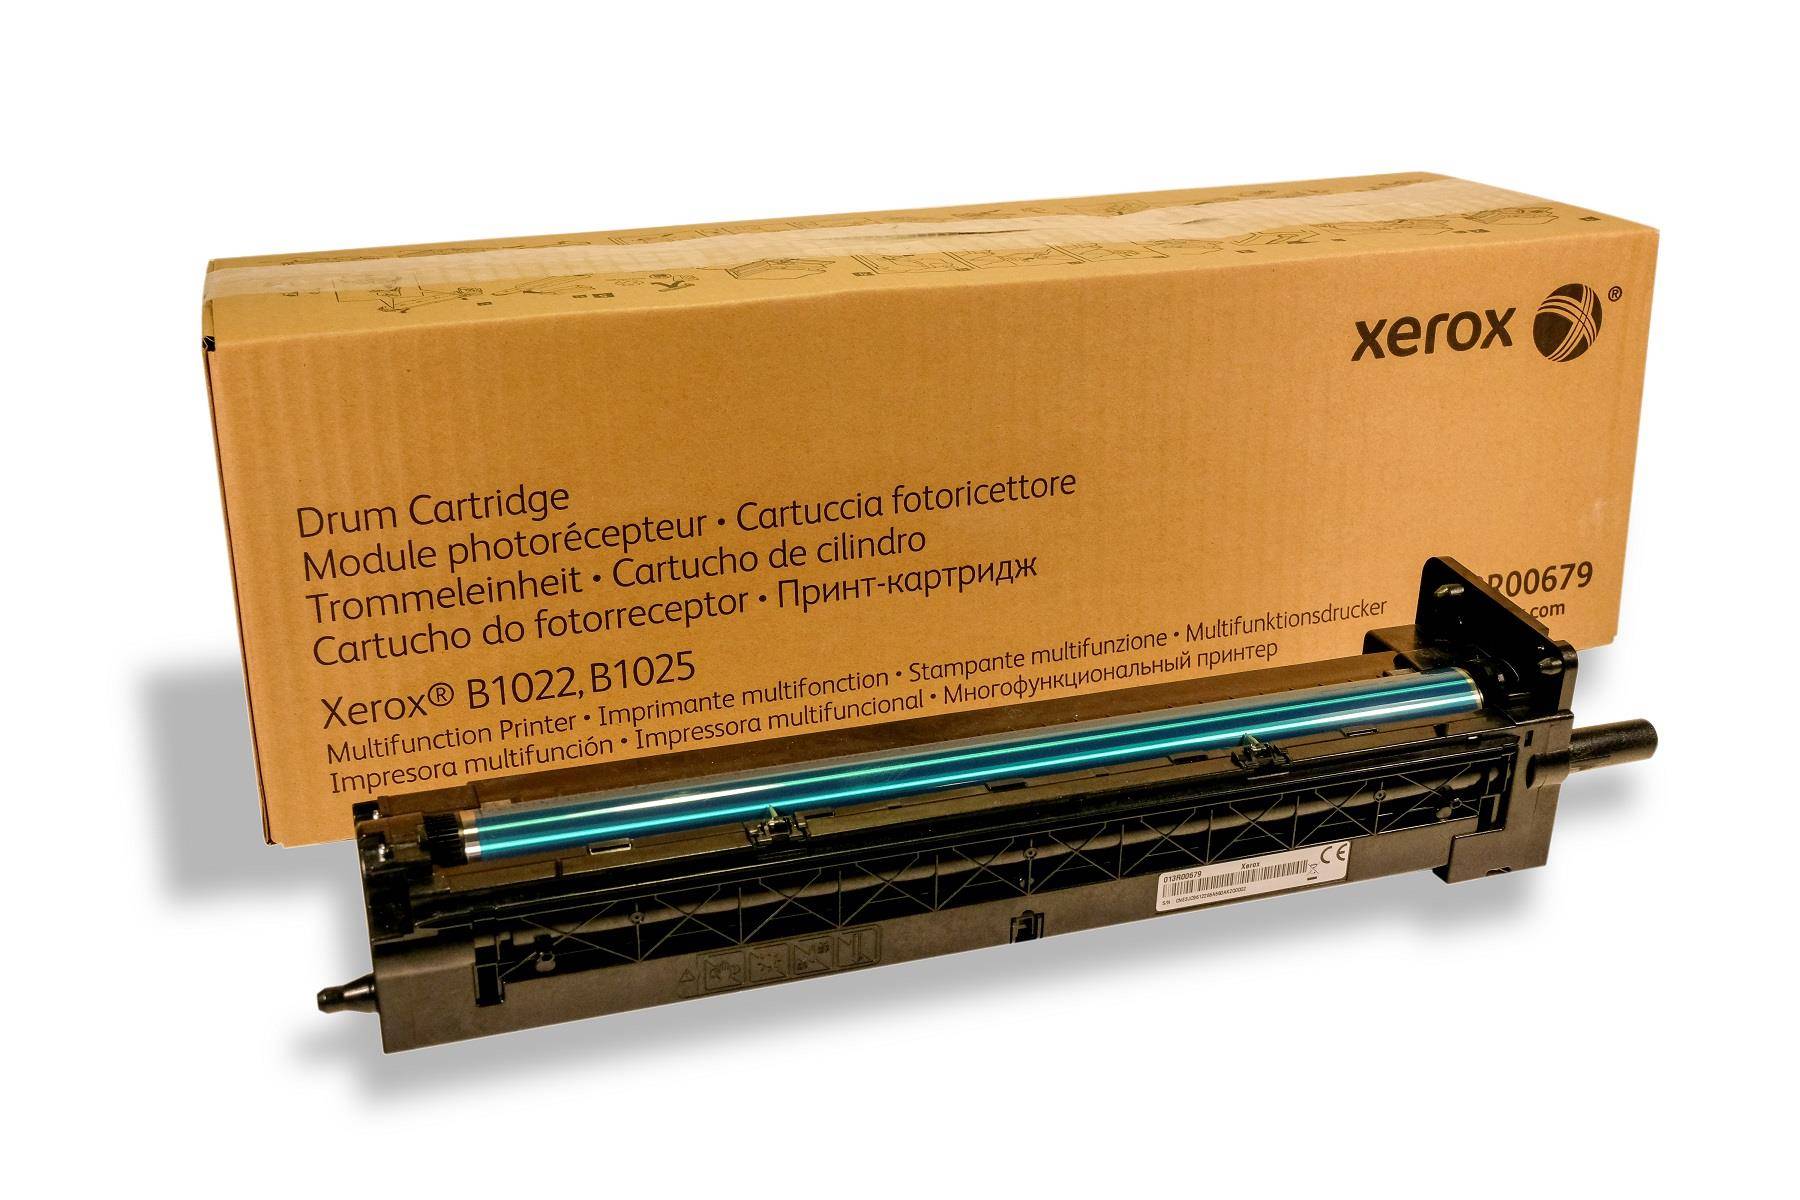 Драм-картридж XEROX B1022/1025 80K (013R00679)